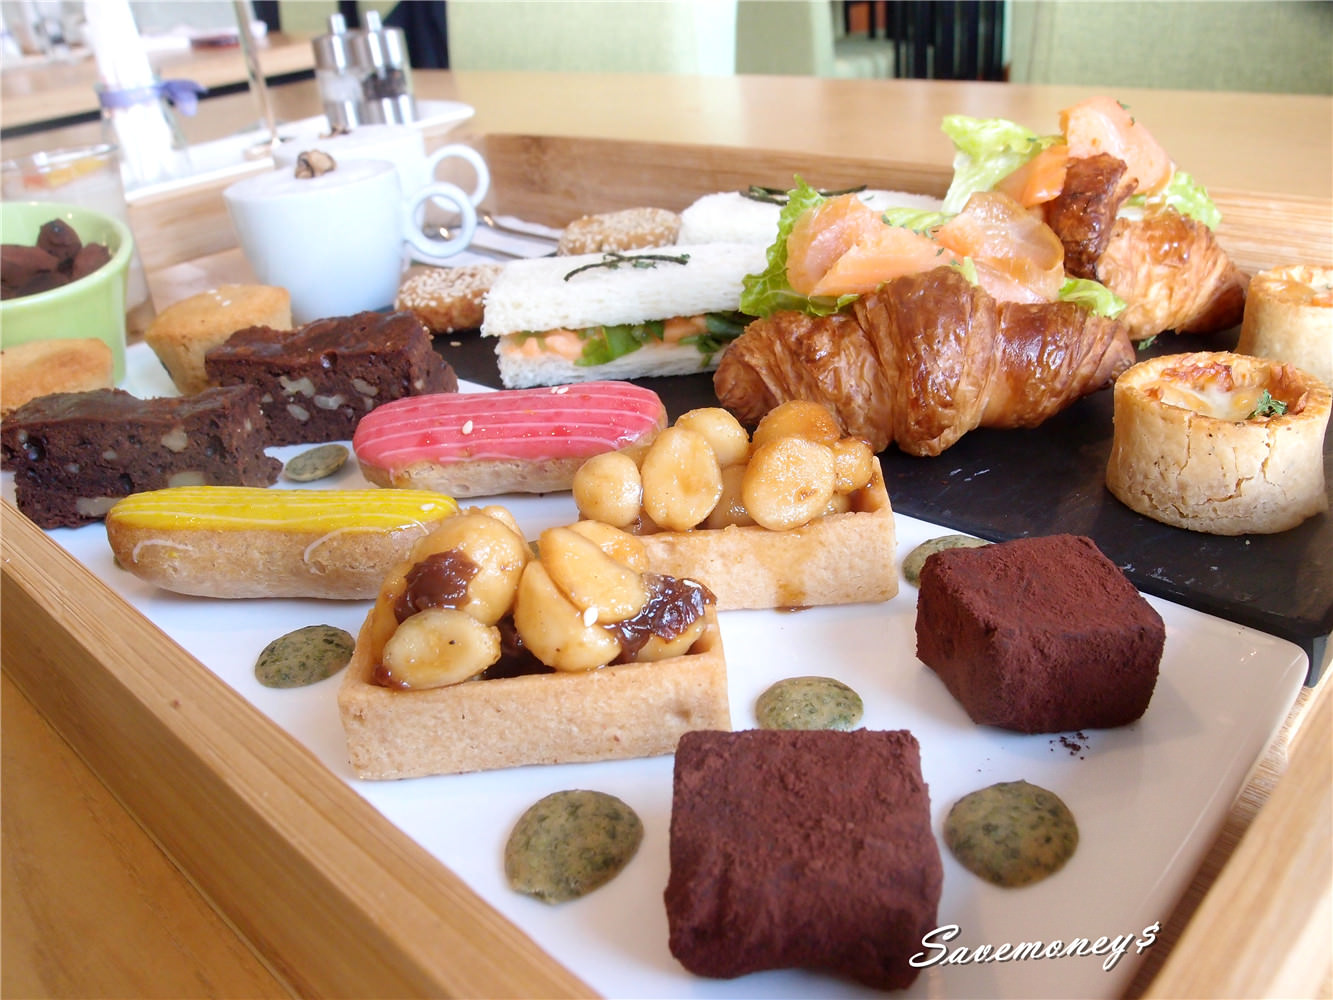 【台中美食】愛麗絲國際飯店Aeris Hotel雙人下午茶,精緻也是一種態度